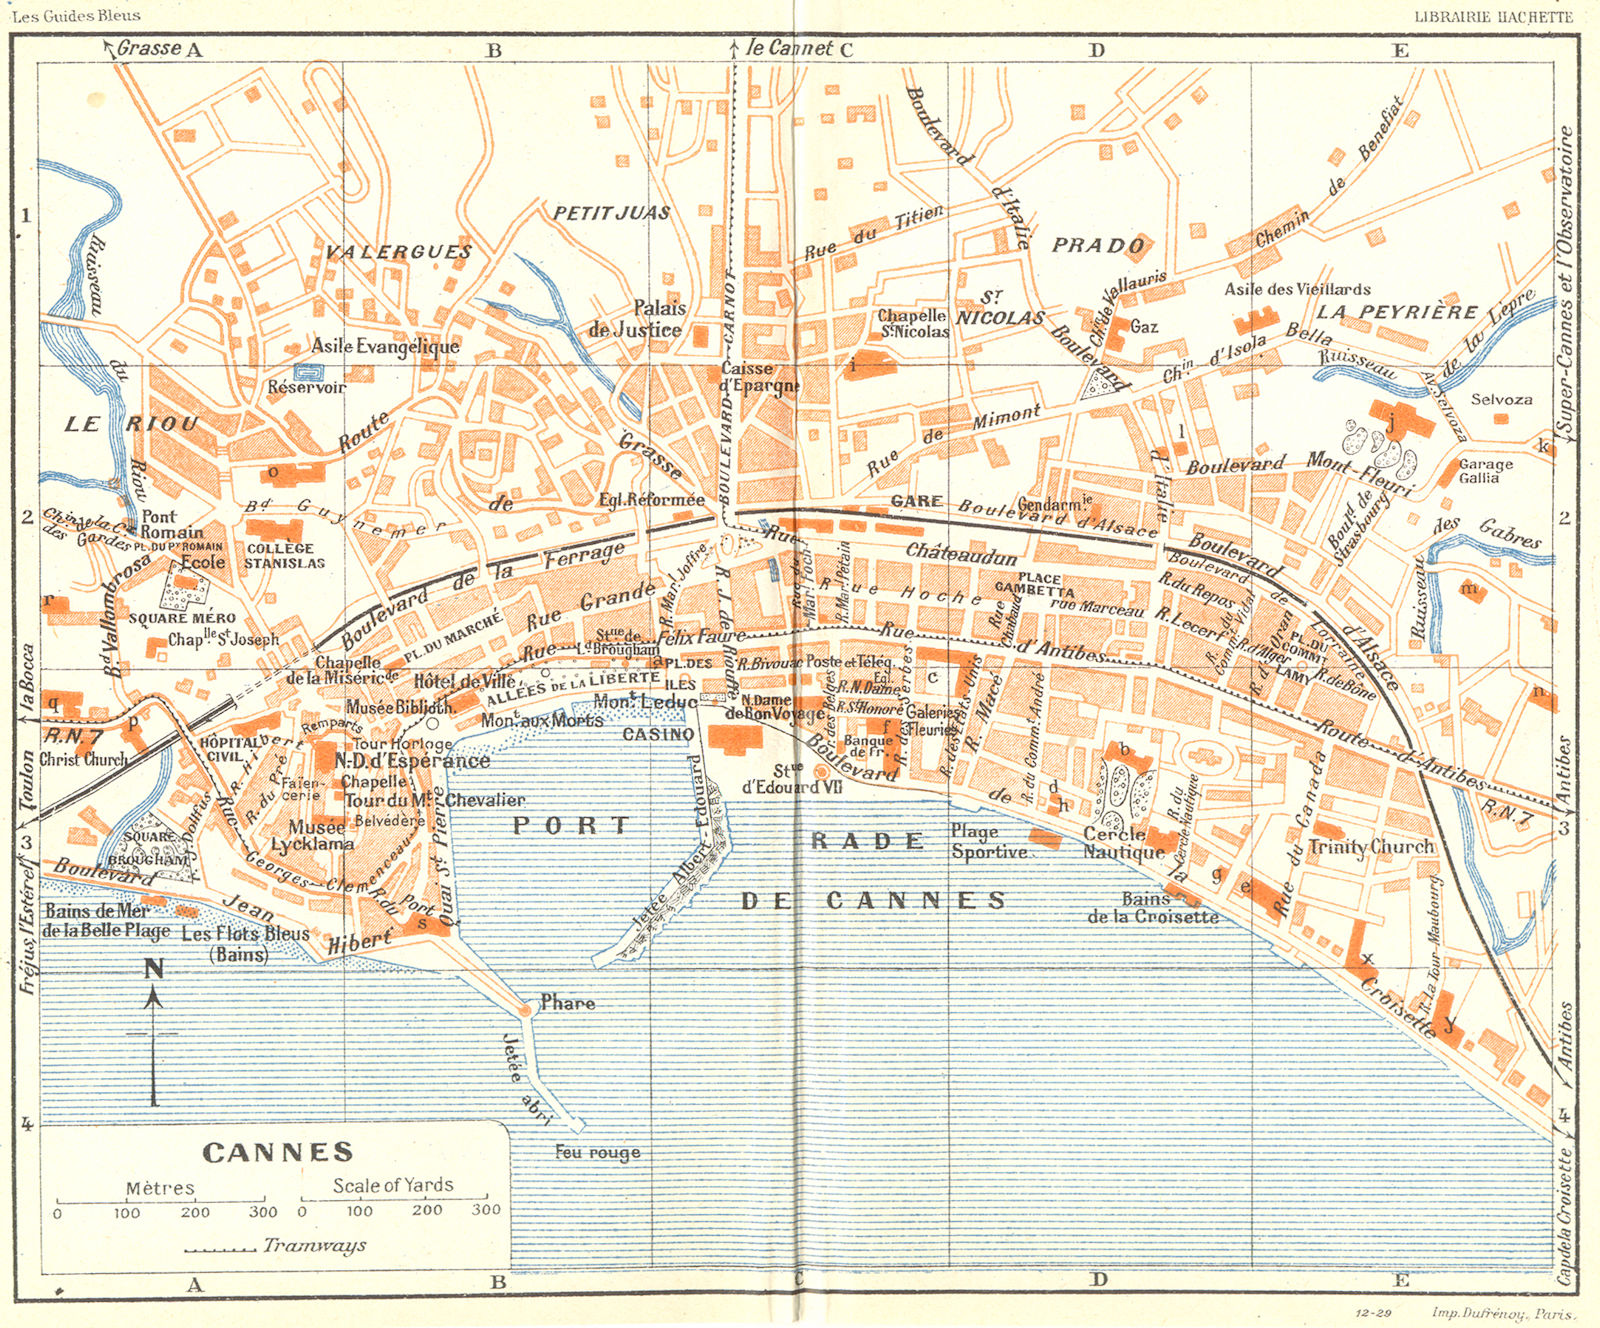 Associate Product COTE D'AZUR. Cannes 1926 old vintage map plan chart